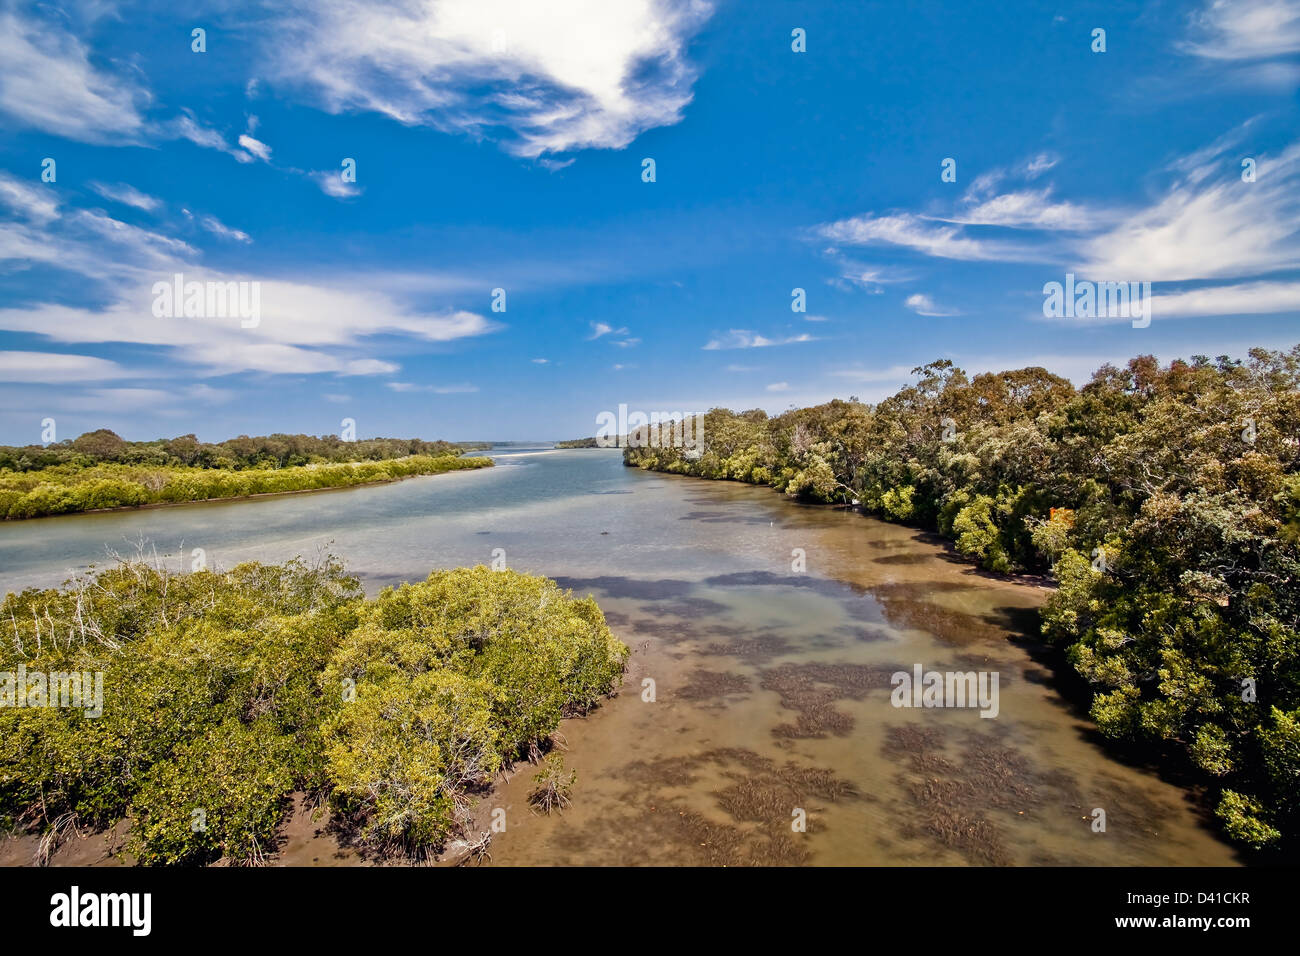 River scene of Weyba Creek Noosa Heads Queensland Australia Stock Photo